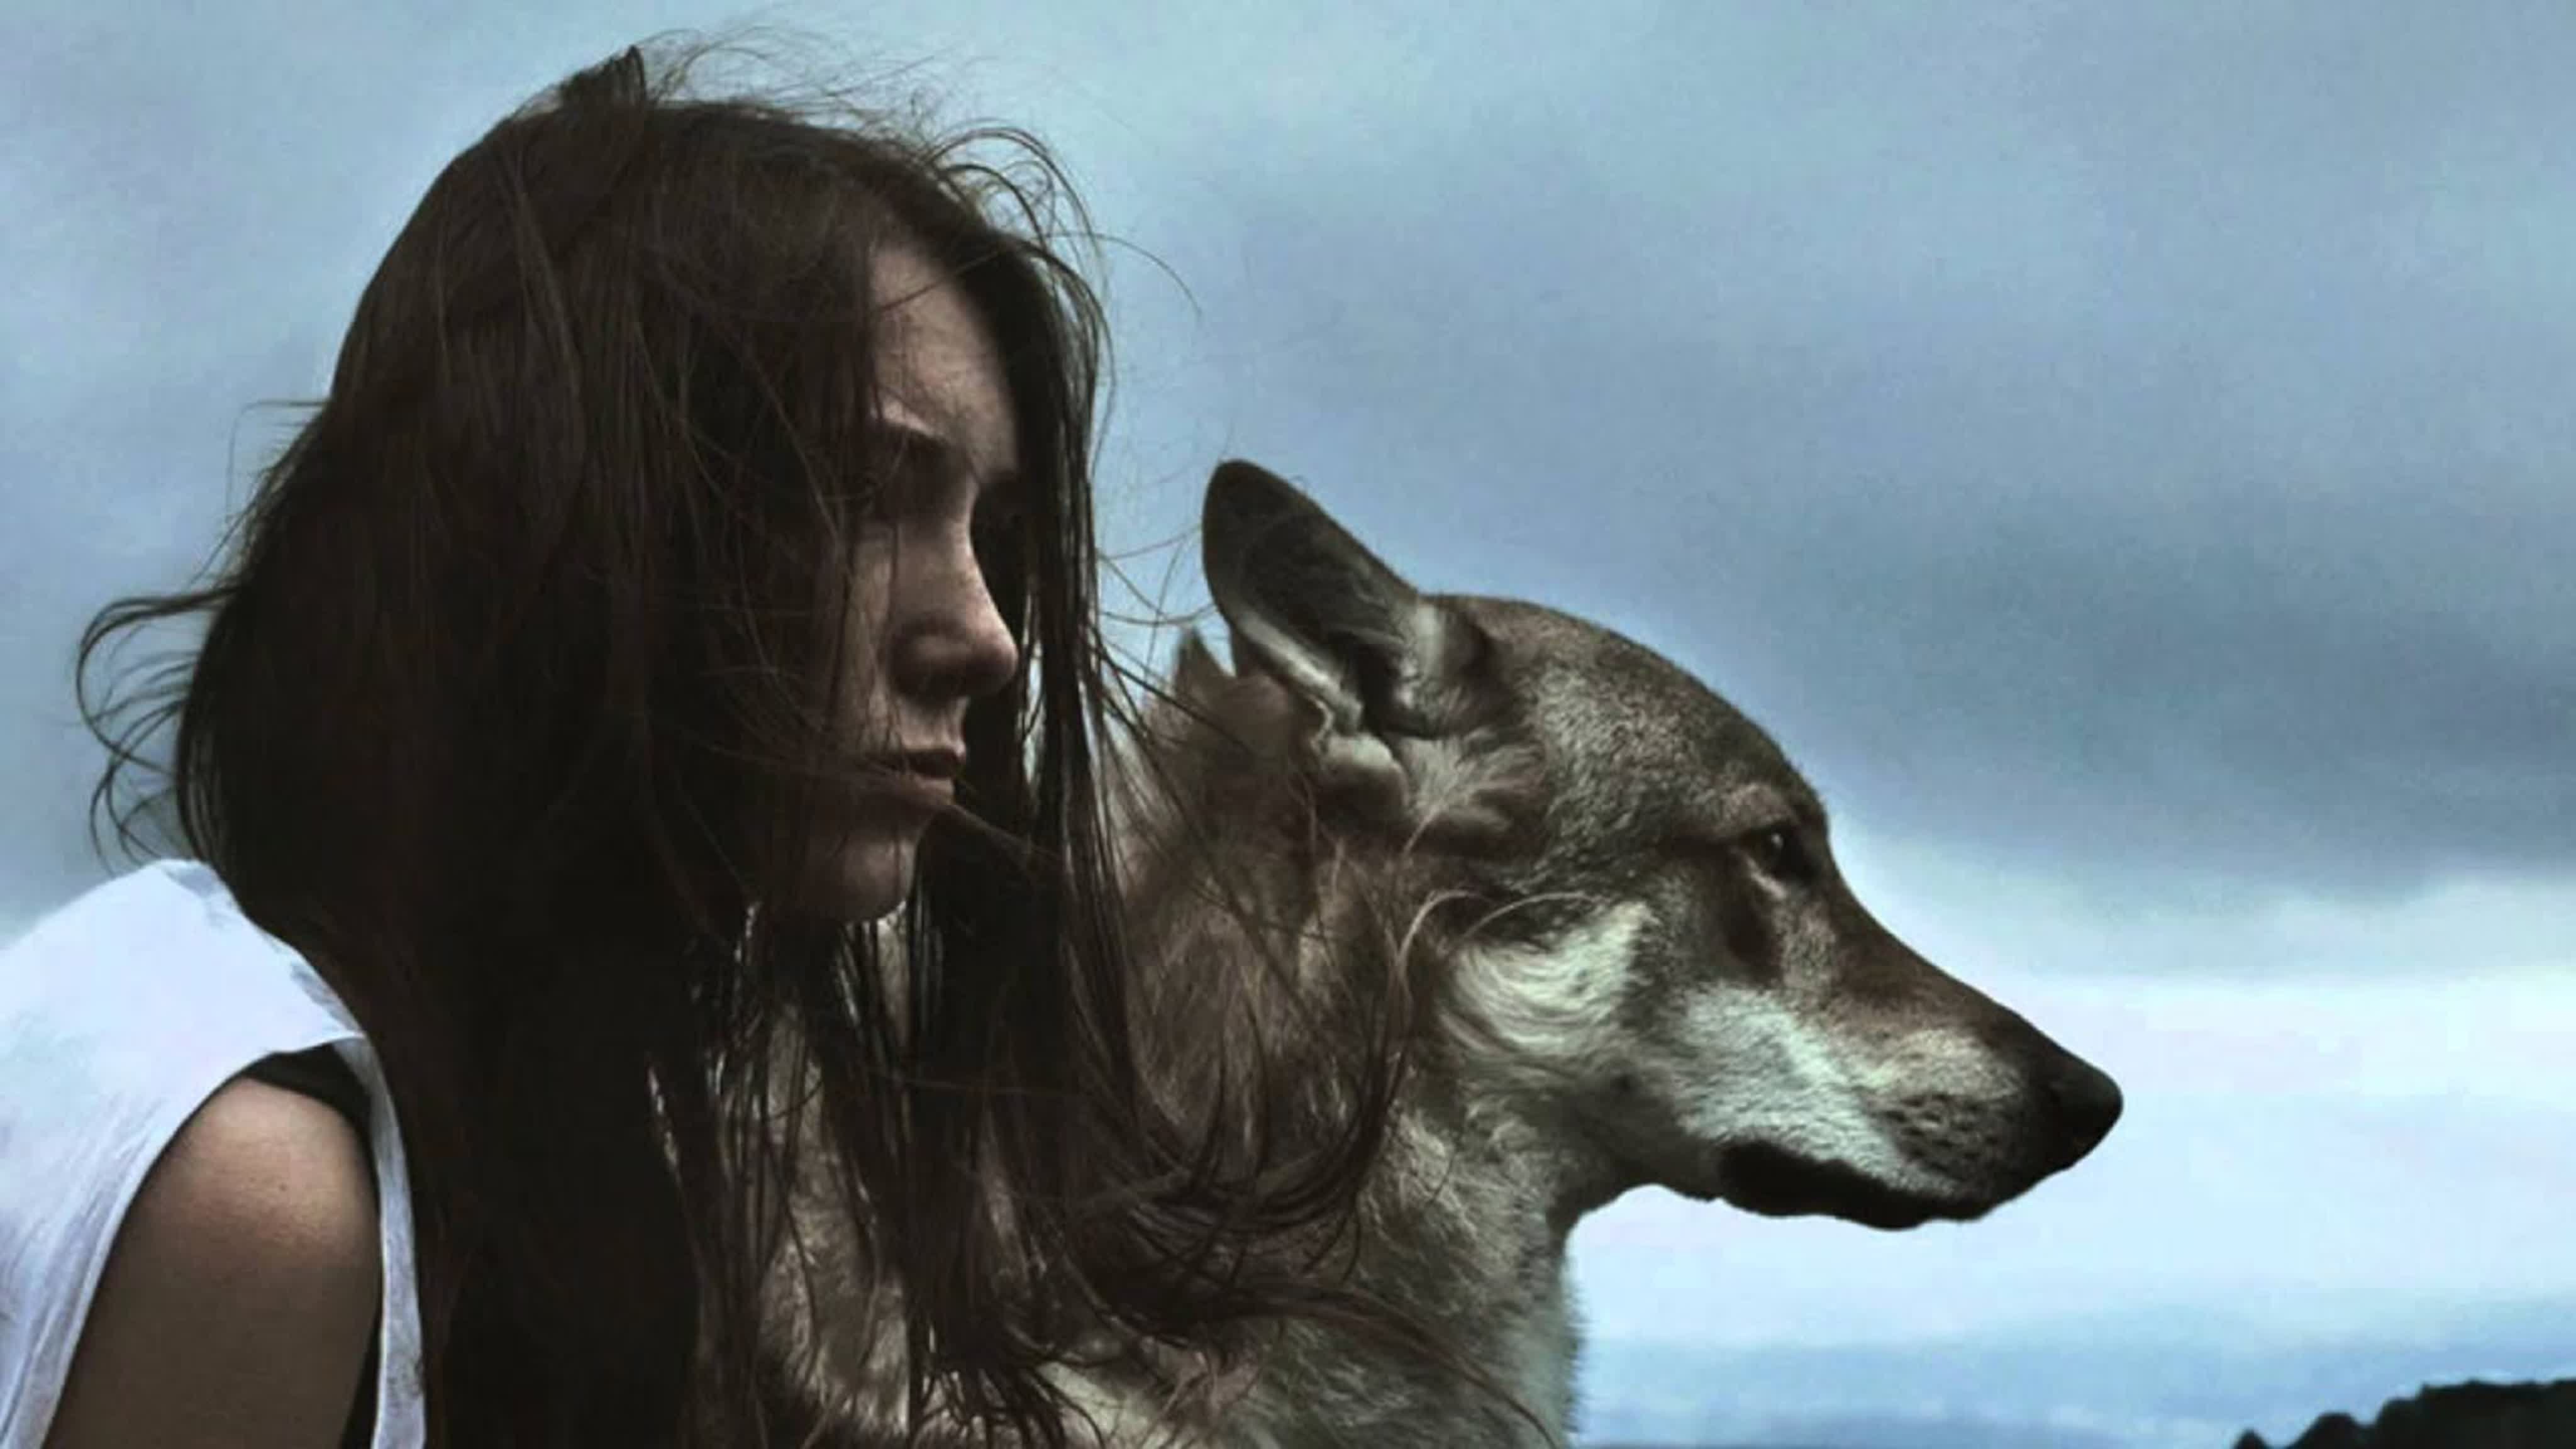 фото женщина волк